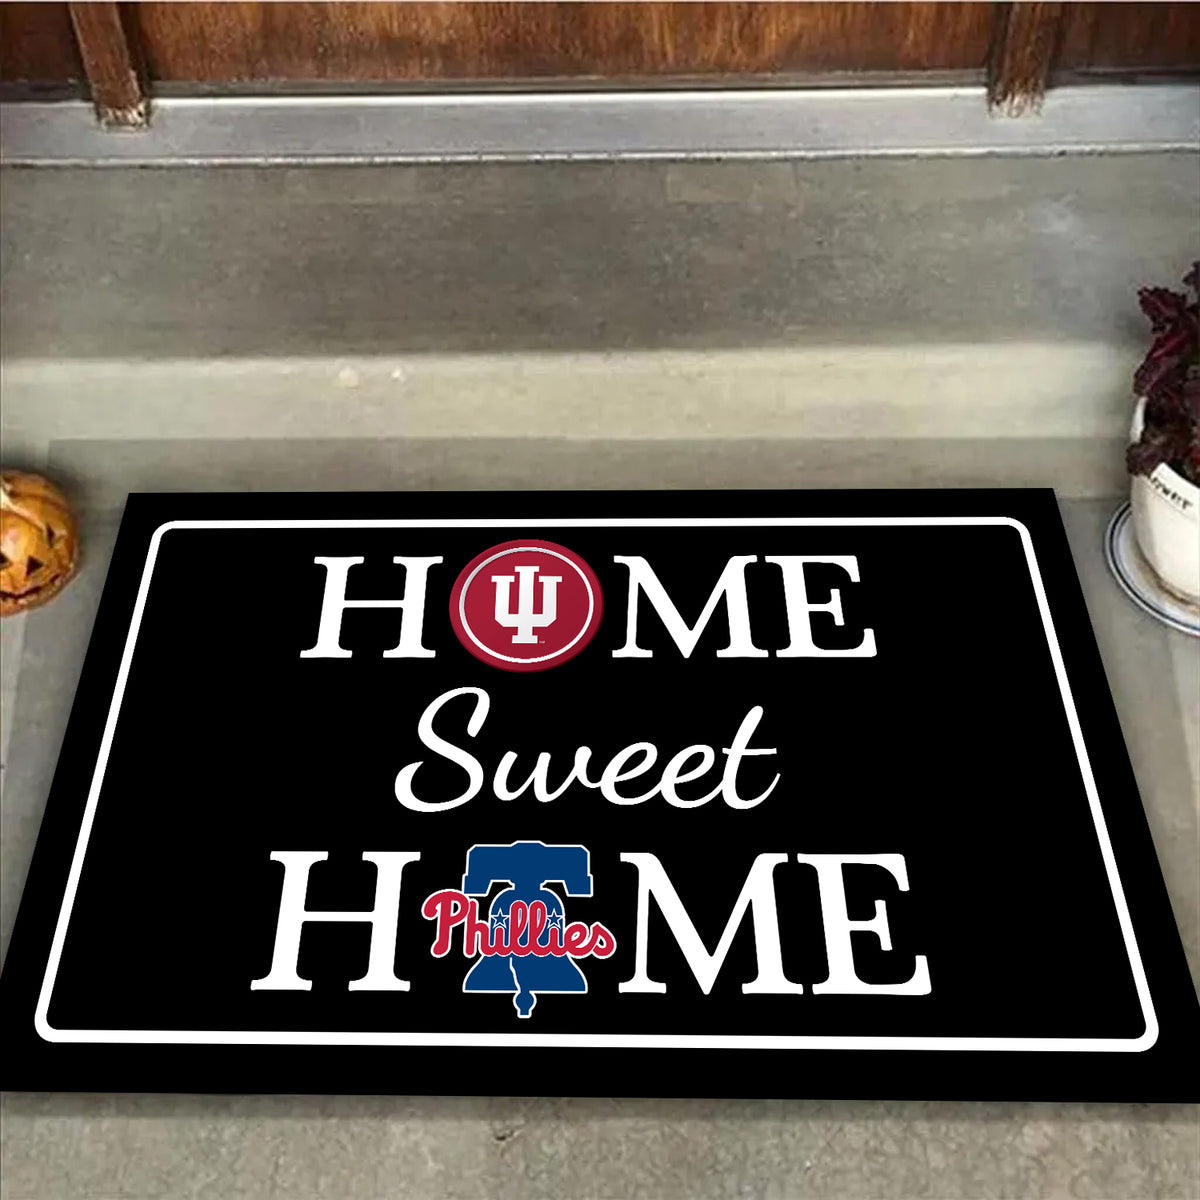 Home Sweet Home - Customized Doormat For Sydney Haynes - Anti Slip Indoor Doormat